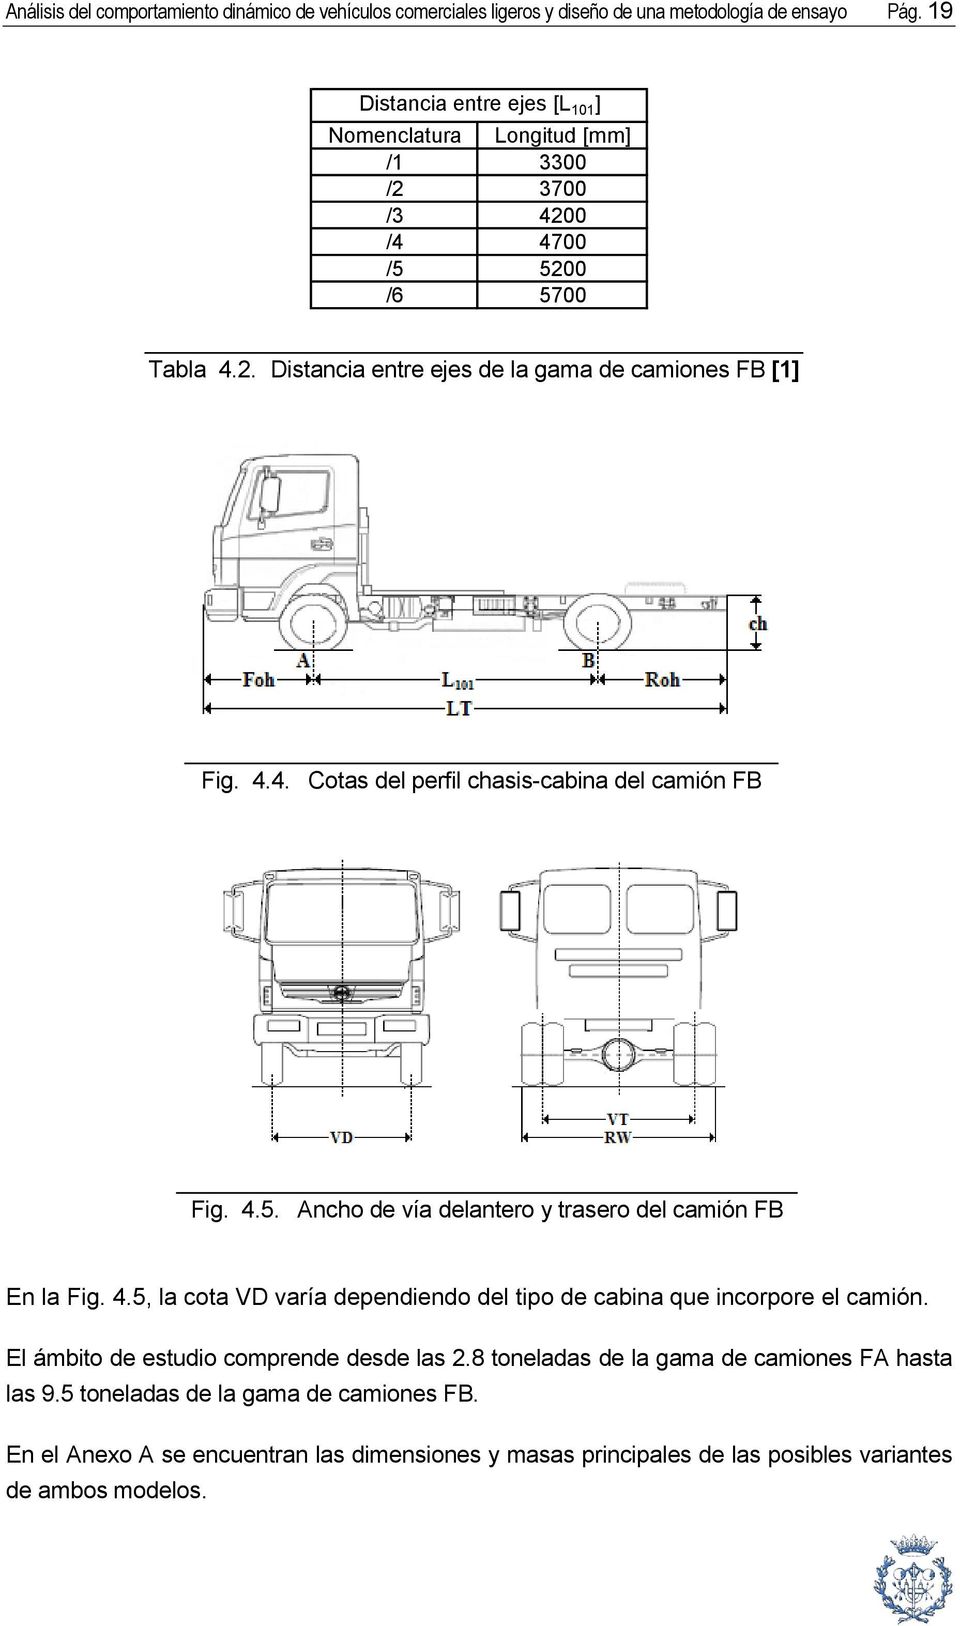 4.5. Ancho de vía delantero y trasero del camión FB En la Fig. 4.5, la cota VD varía dependiendo del tipo de cabina que incorpore el camión.